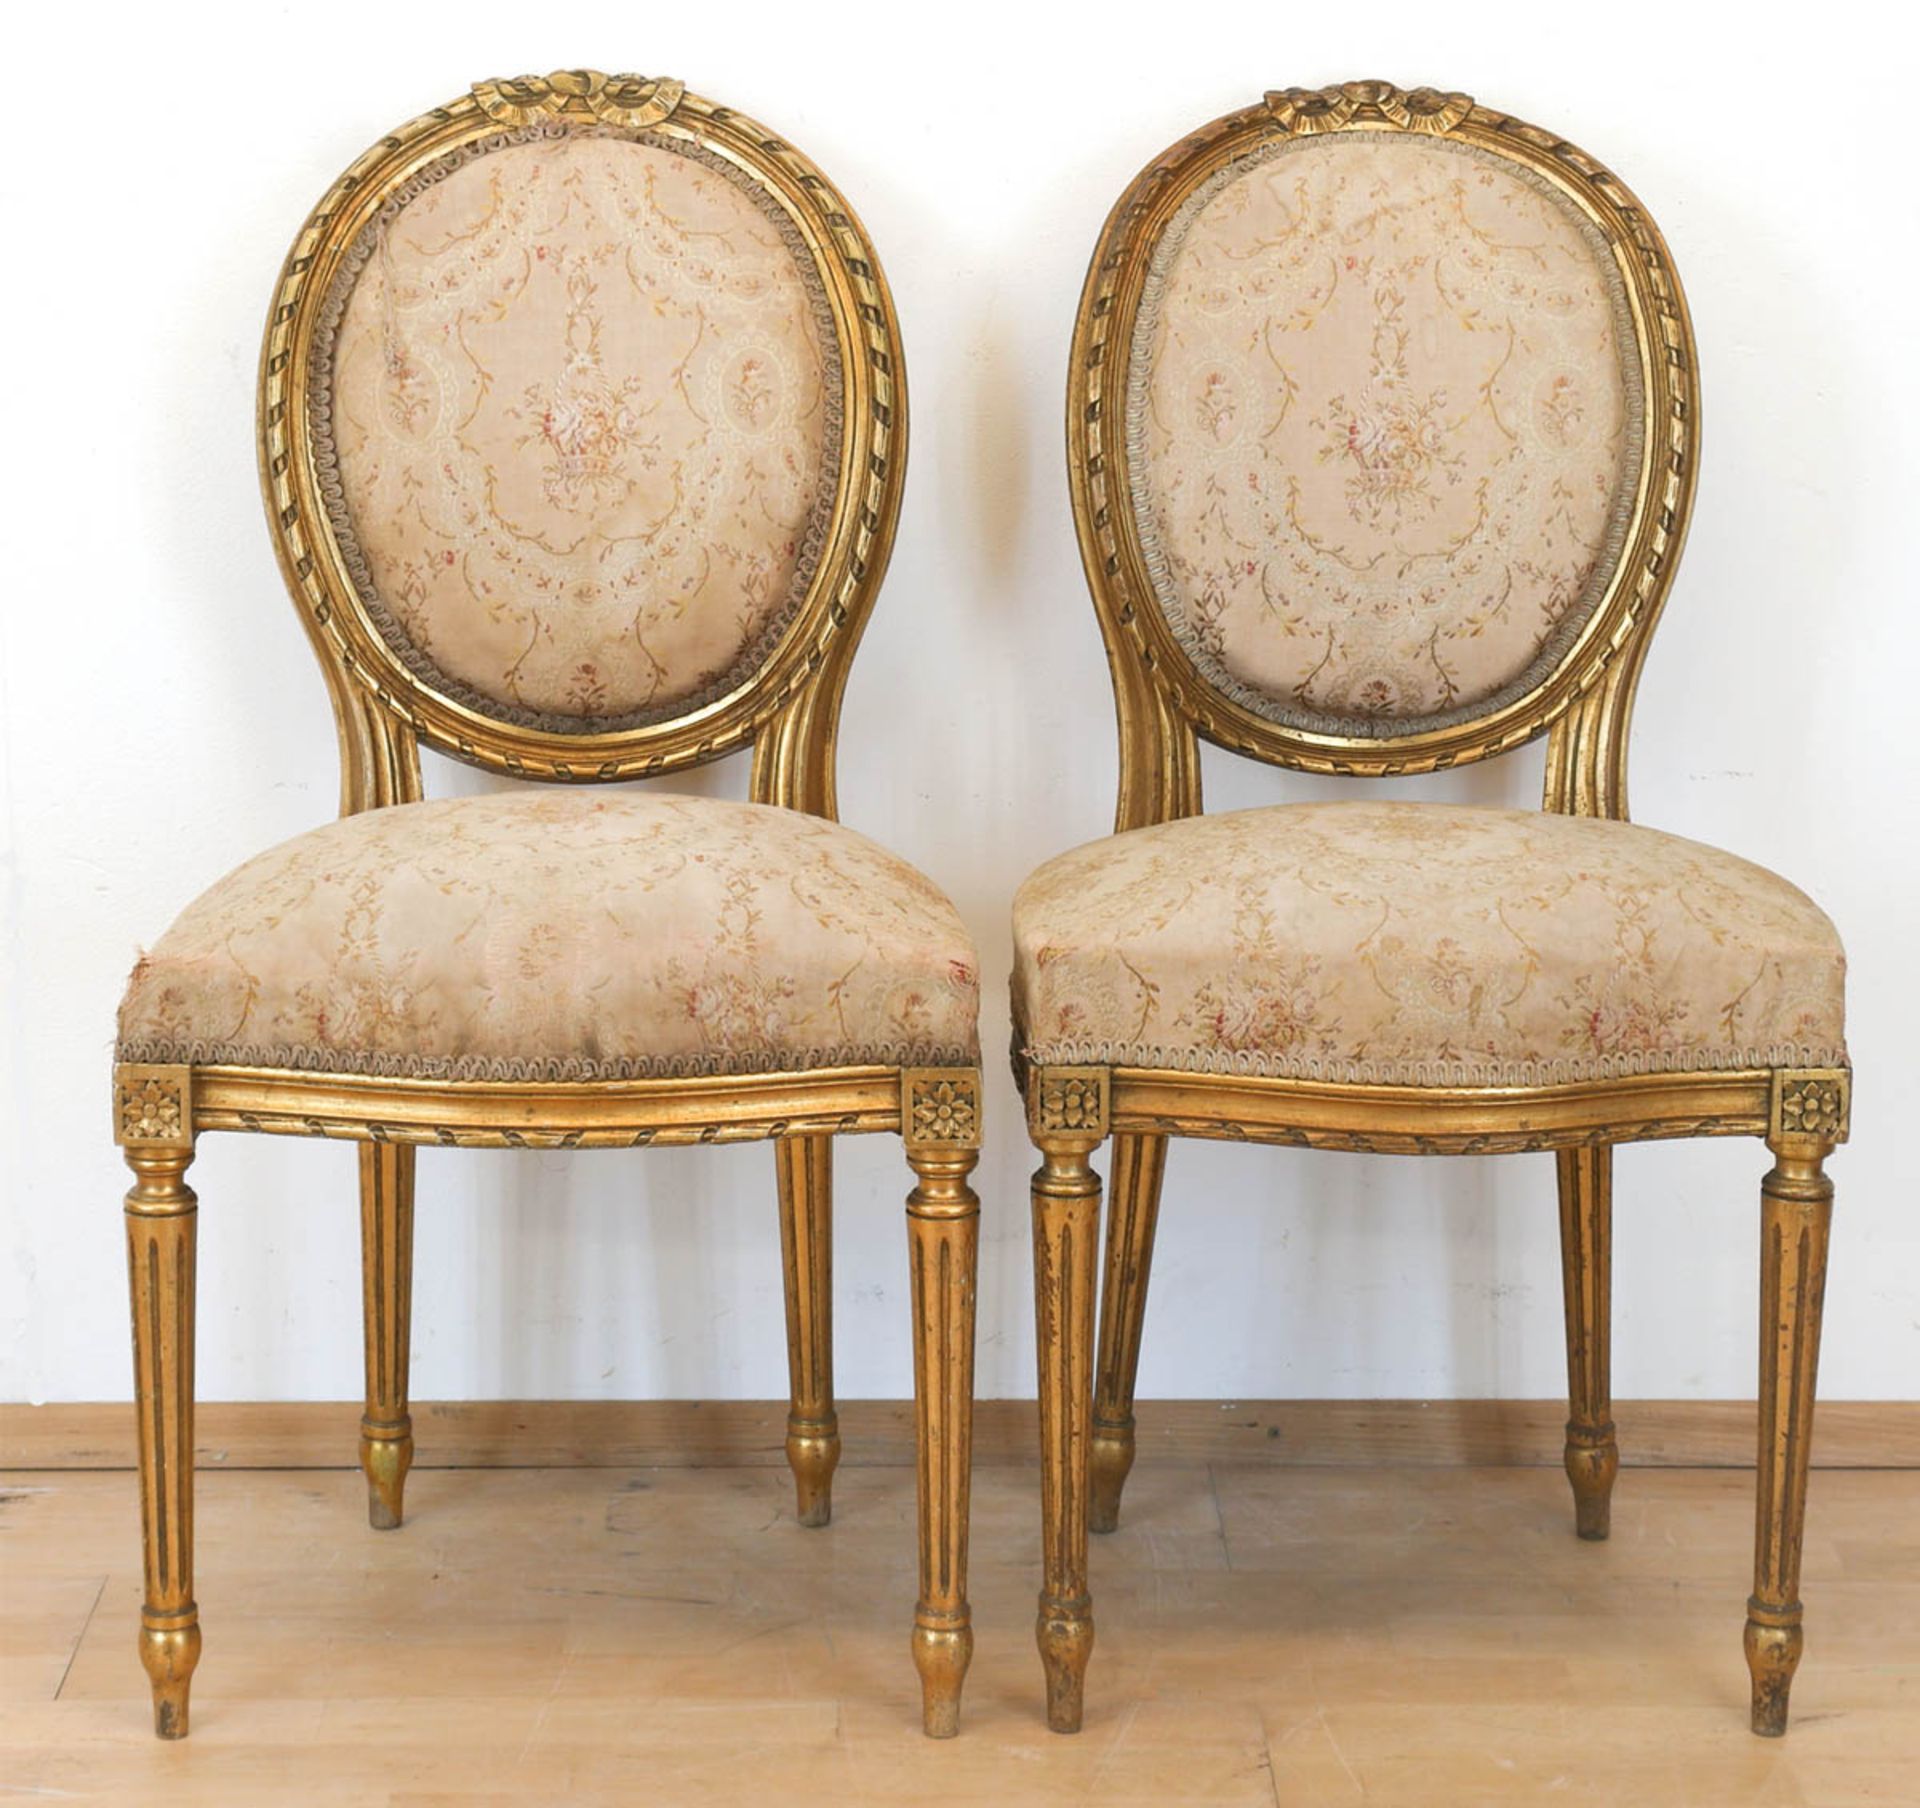 Paar Louis-Seize-Stühle, vergoldet, Sitz und ovale Rückenlehne gepolstert, heller, floralgemusterter